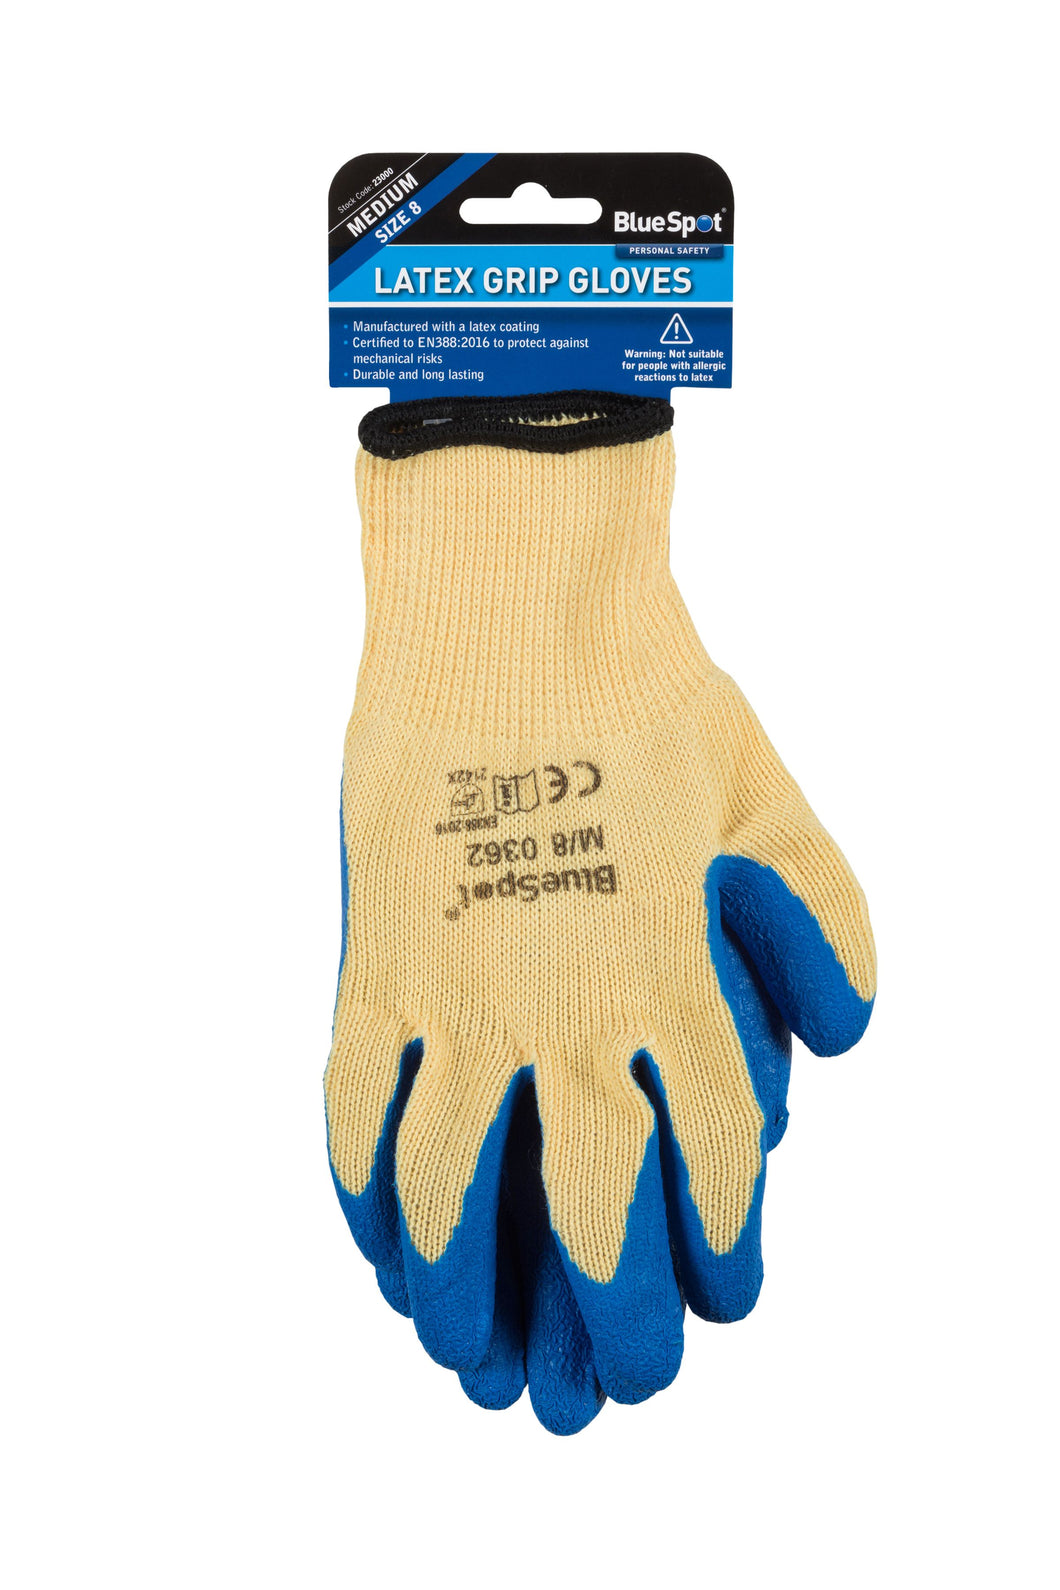 Blue Spot Latex Grip Gloves (Medium)